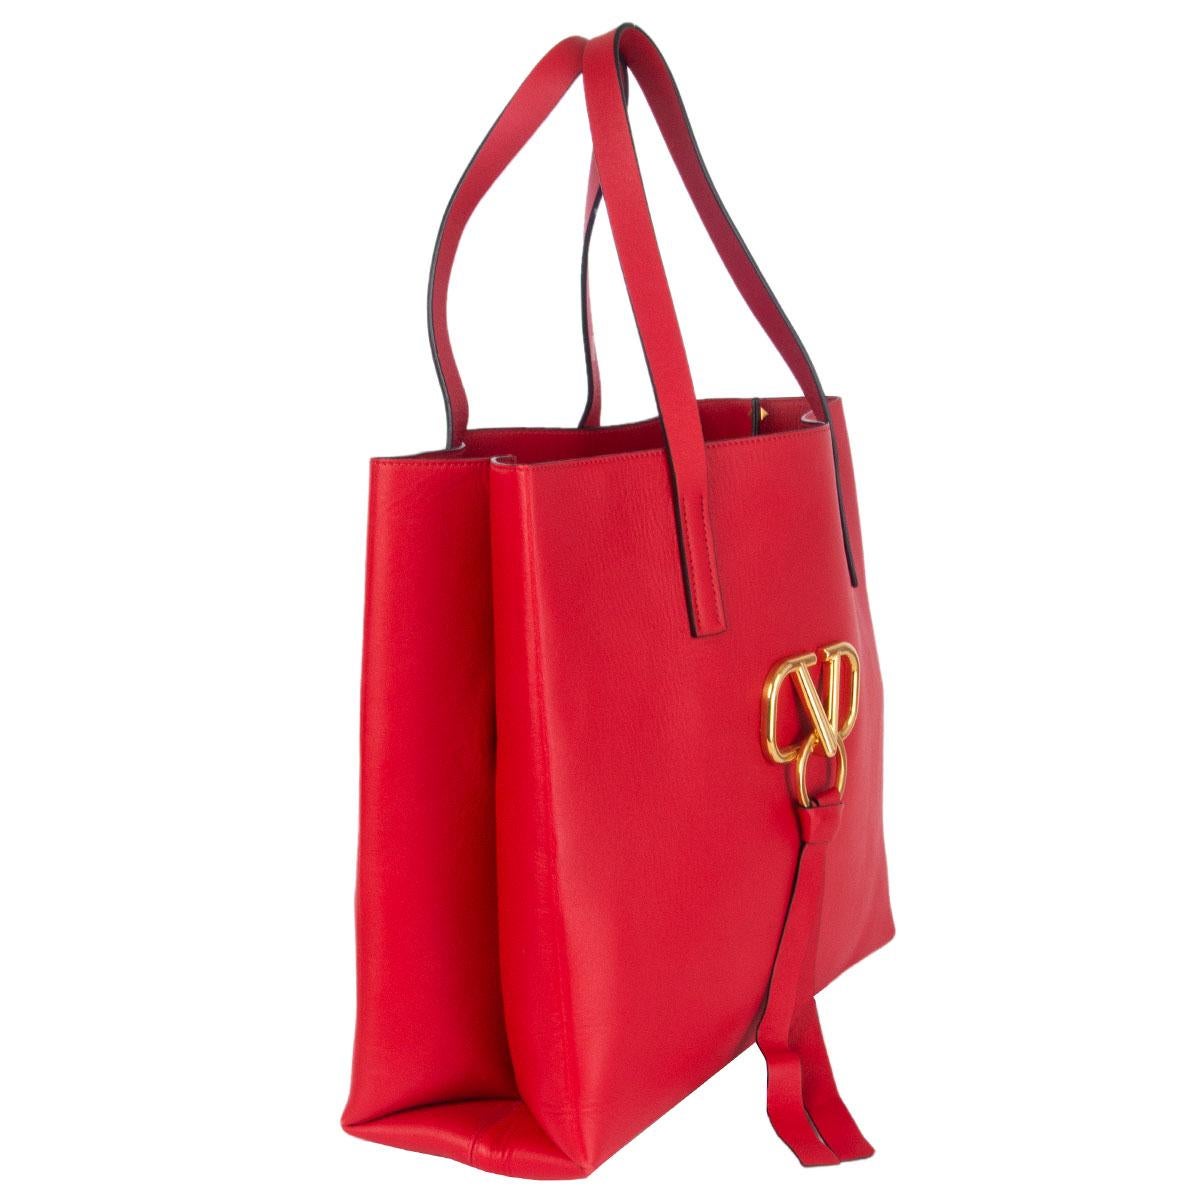 100% authentische Valentino große VRING Tote Bag aus rotem Leder mit goldfarbener Logo-Plakette auf der Vorderseite, die mit einem passenden roten Leder-Schlüsselring verziert ist. Mit rotem Leder gefüttert, mit abnehmbarem Innenbeutel aus Leder mit